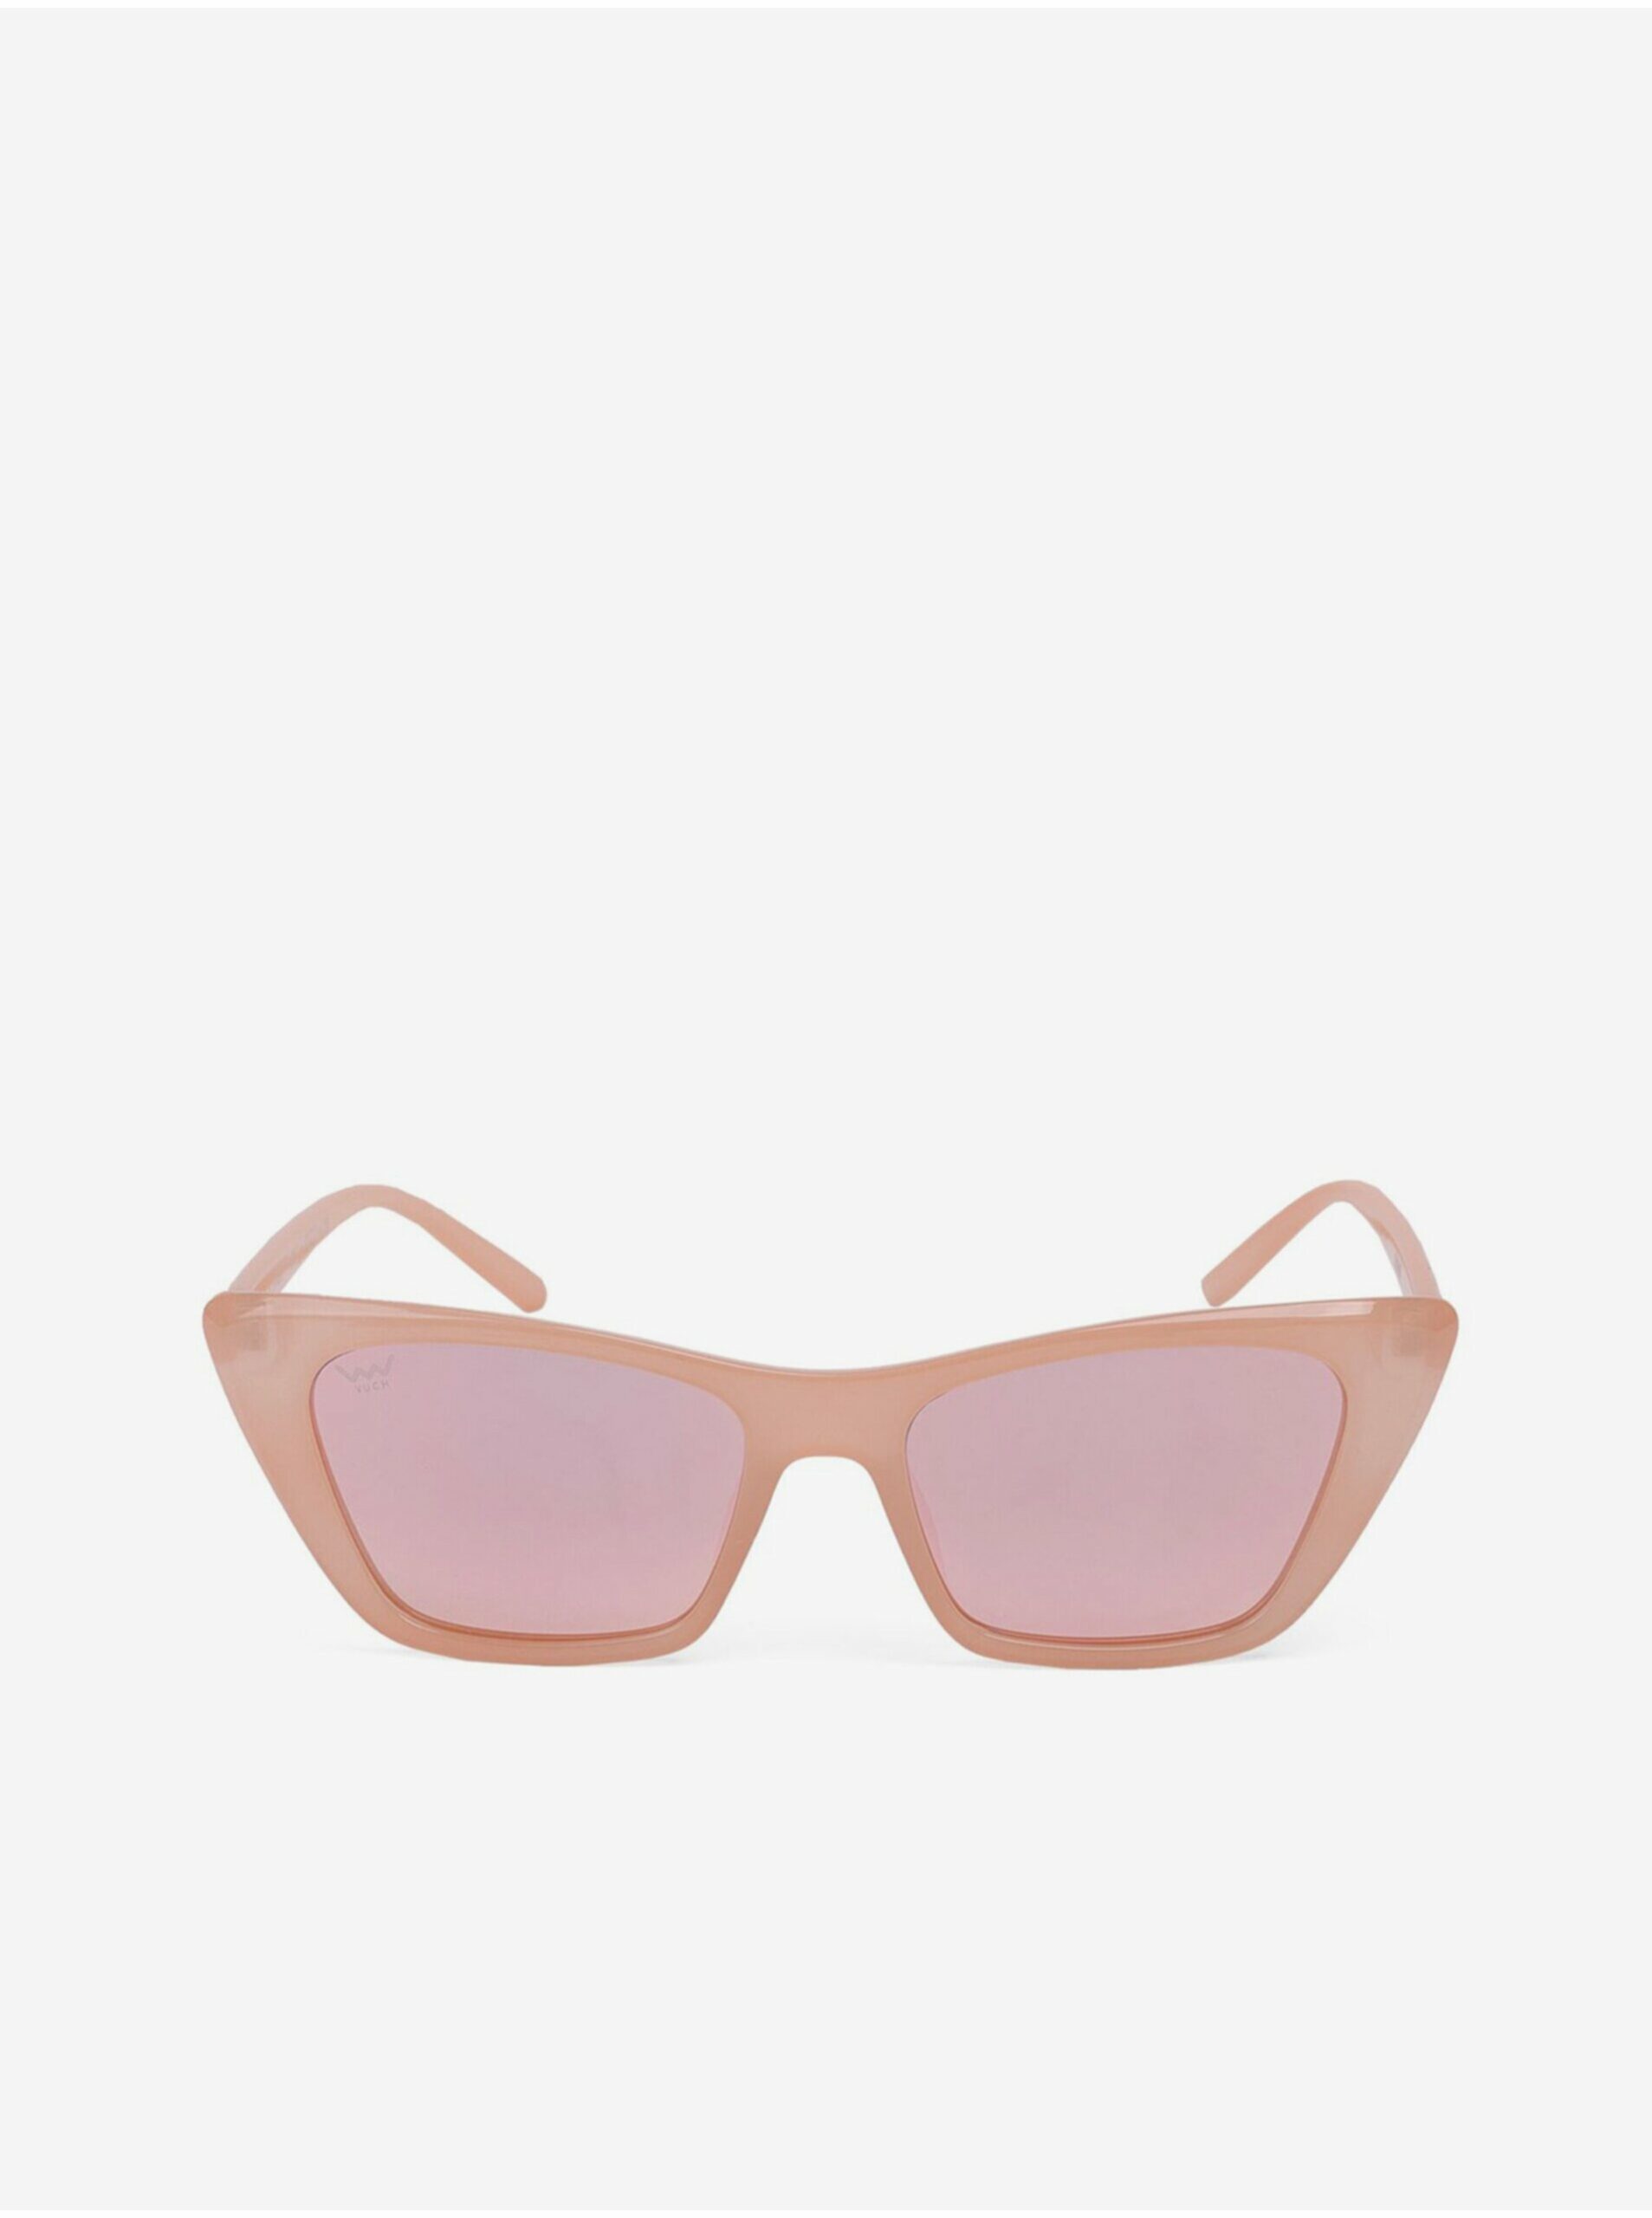 Svetloružové dámske slnečné okuliare VUCH Marella Pink